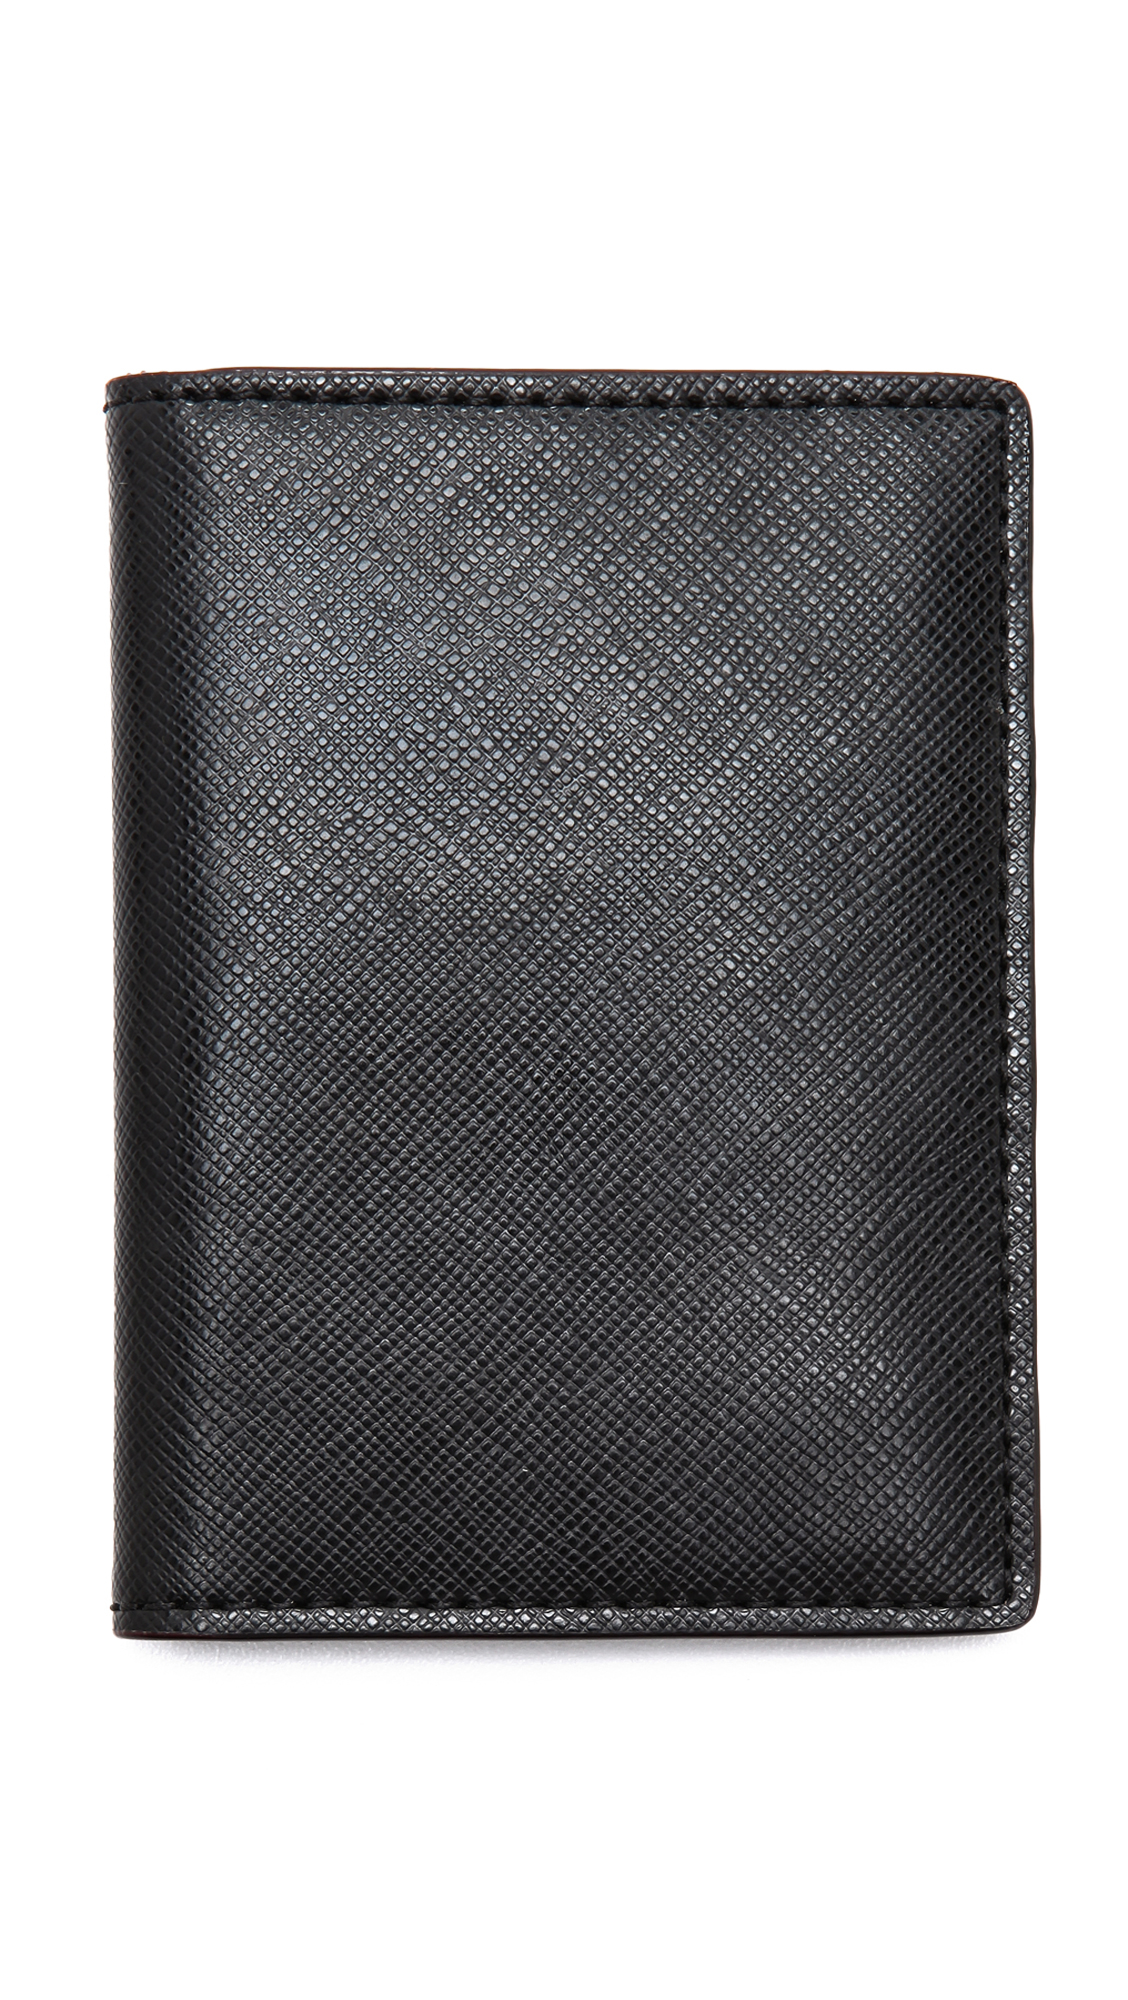 Lyst - Jack Spade Wesson Vertical Flap Wallet in Black for Men